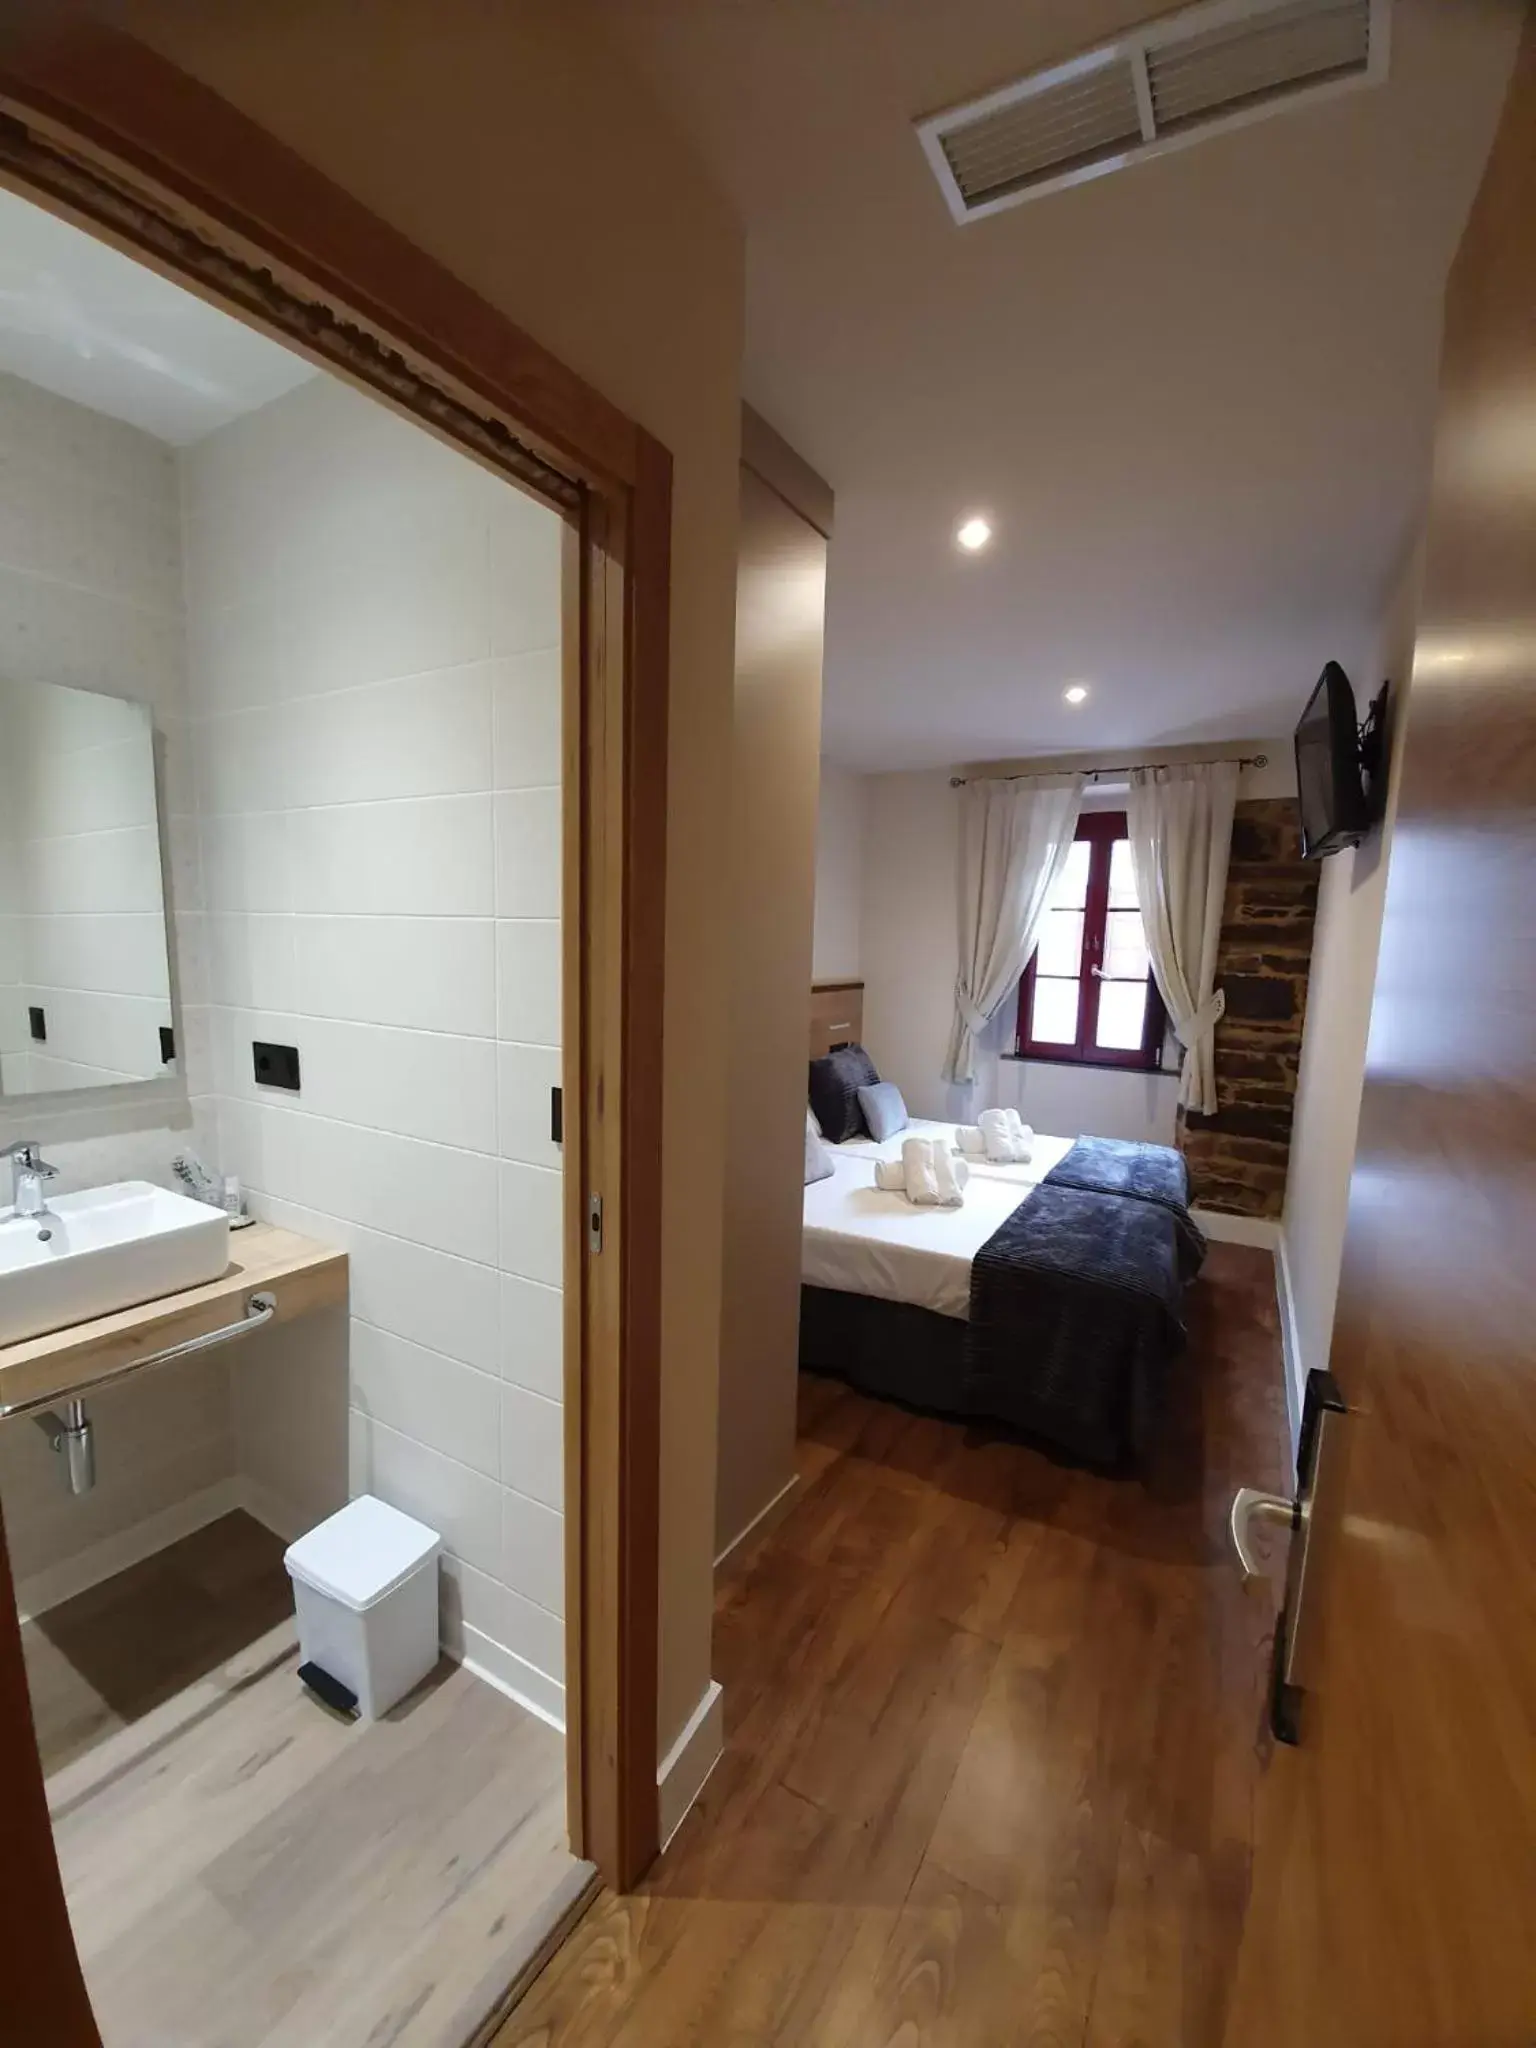 Bedroom, Bathroom in Albergue Casa Cuartel